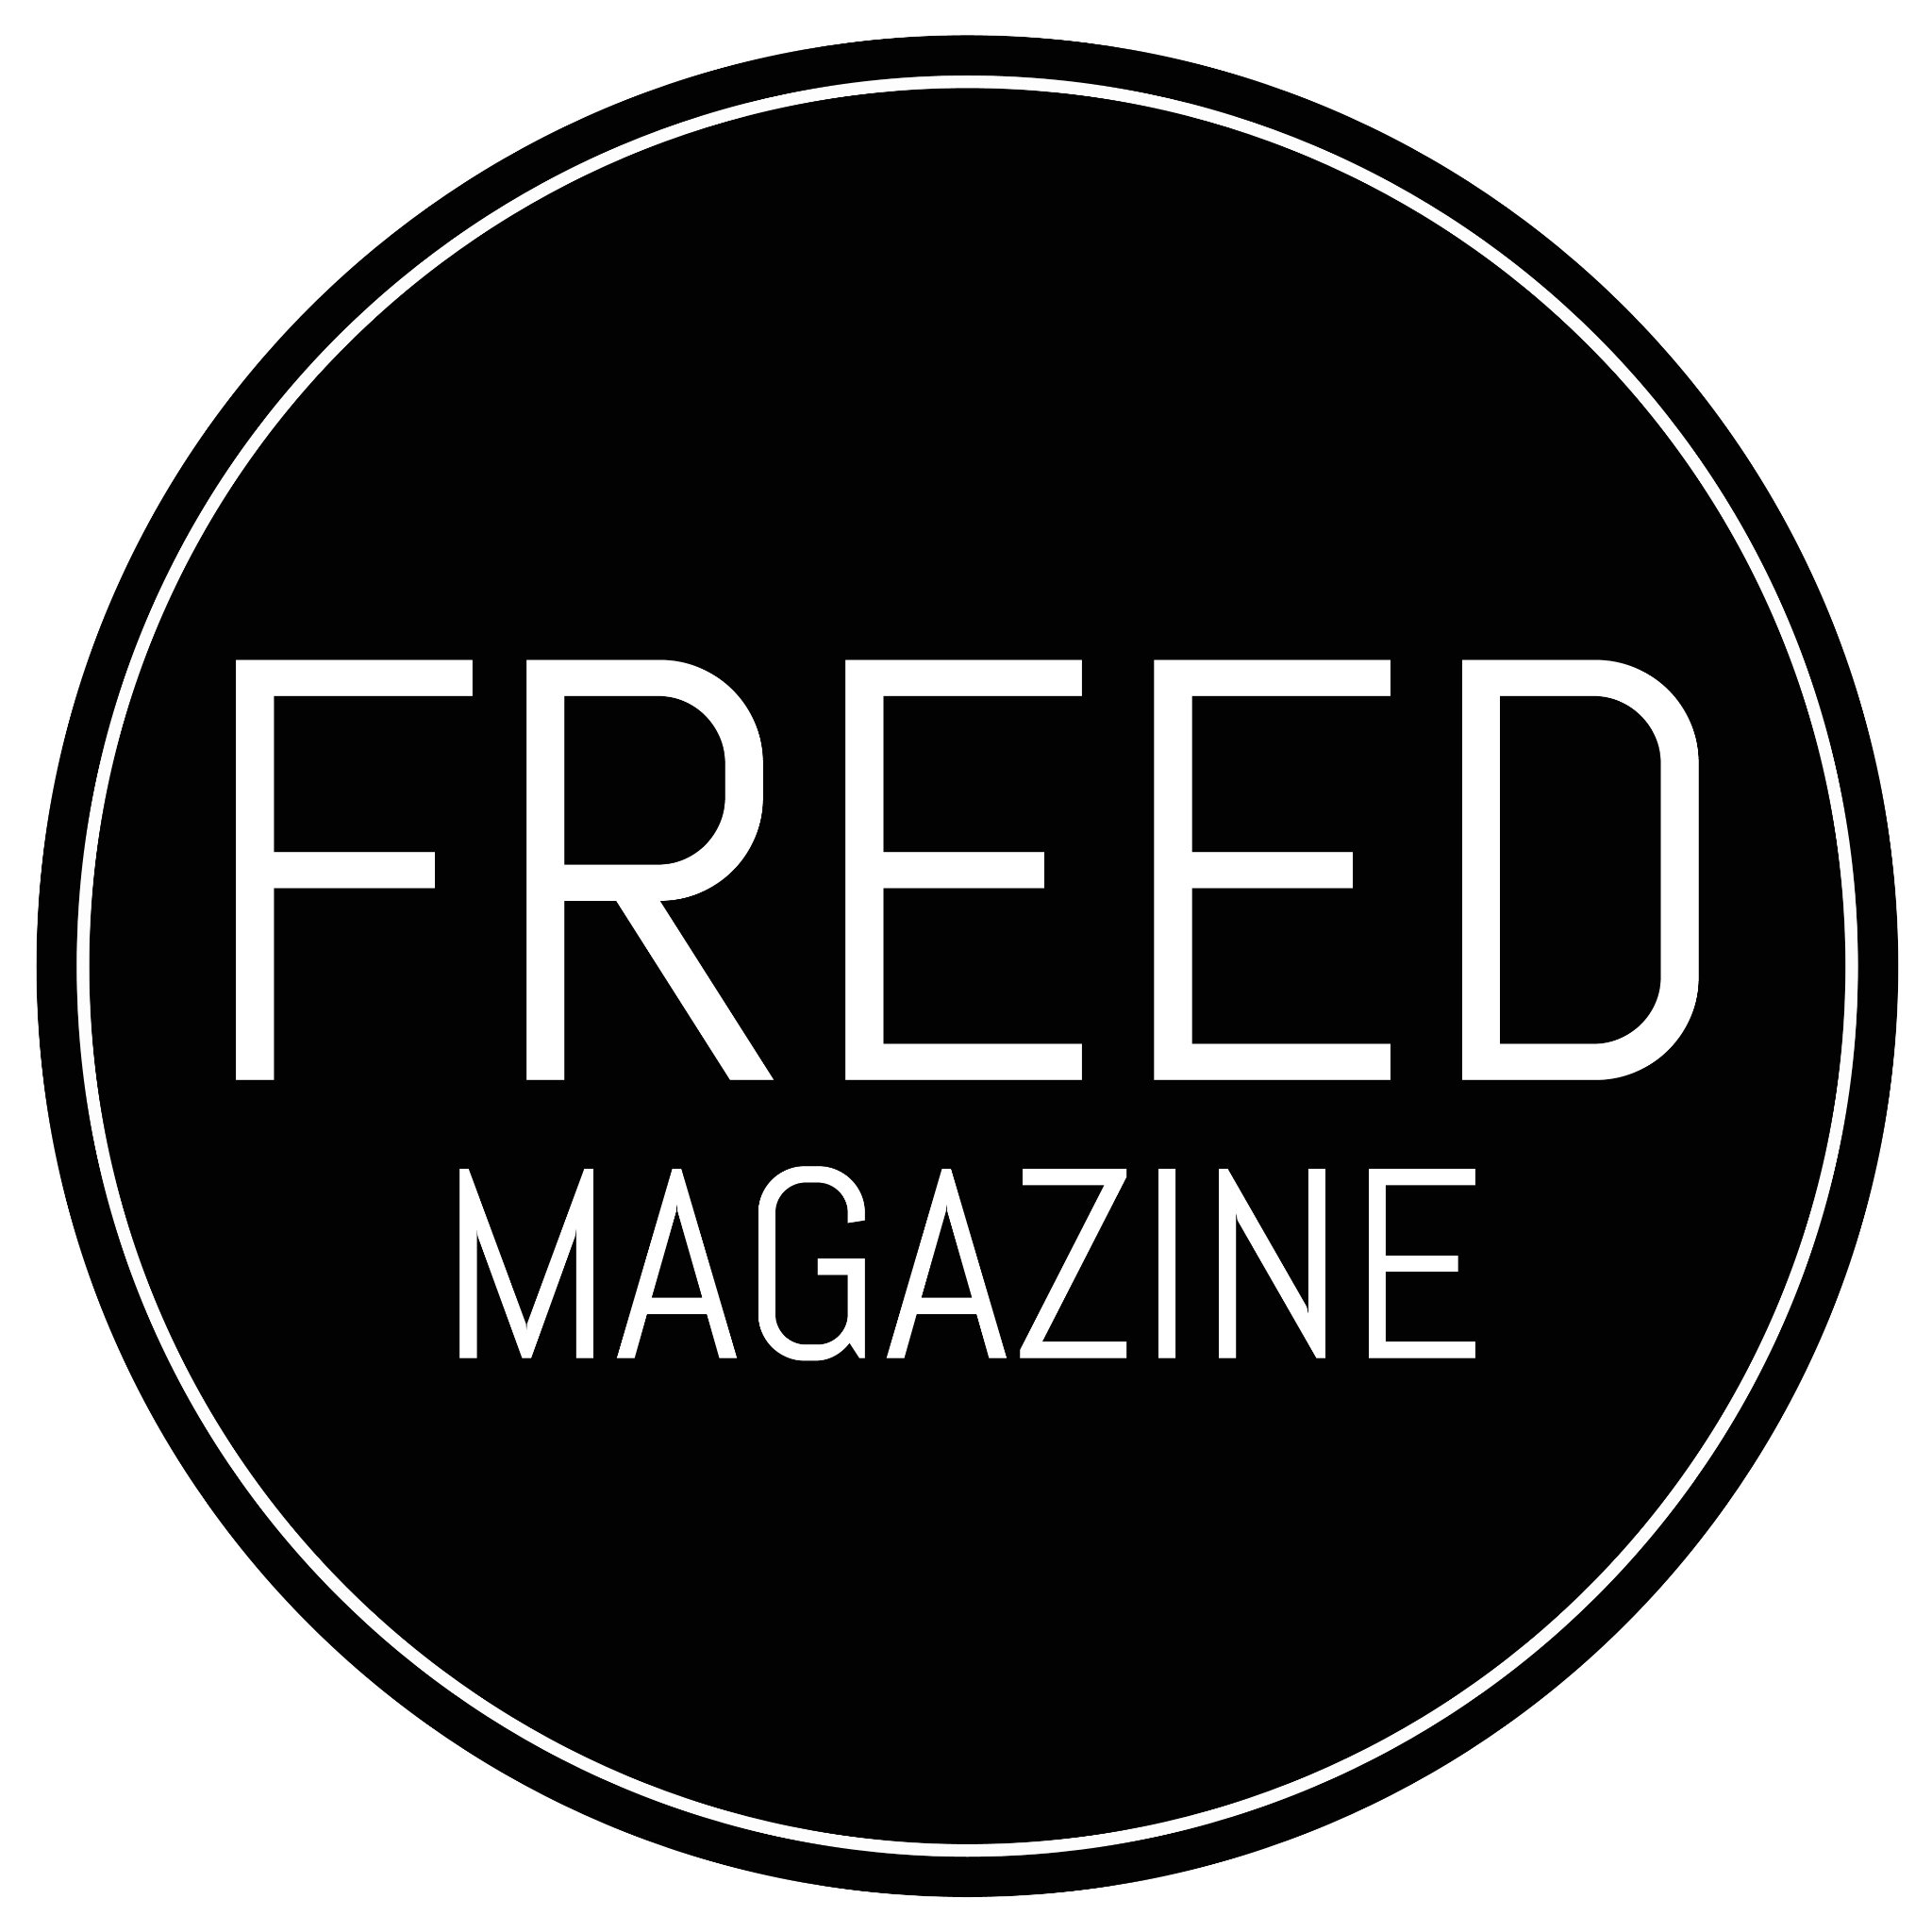 FREED Magazine